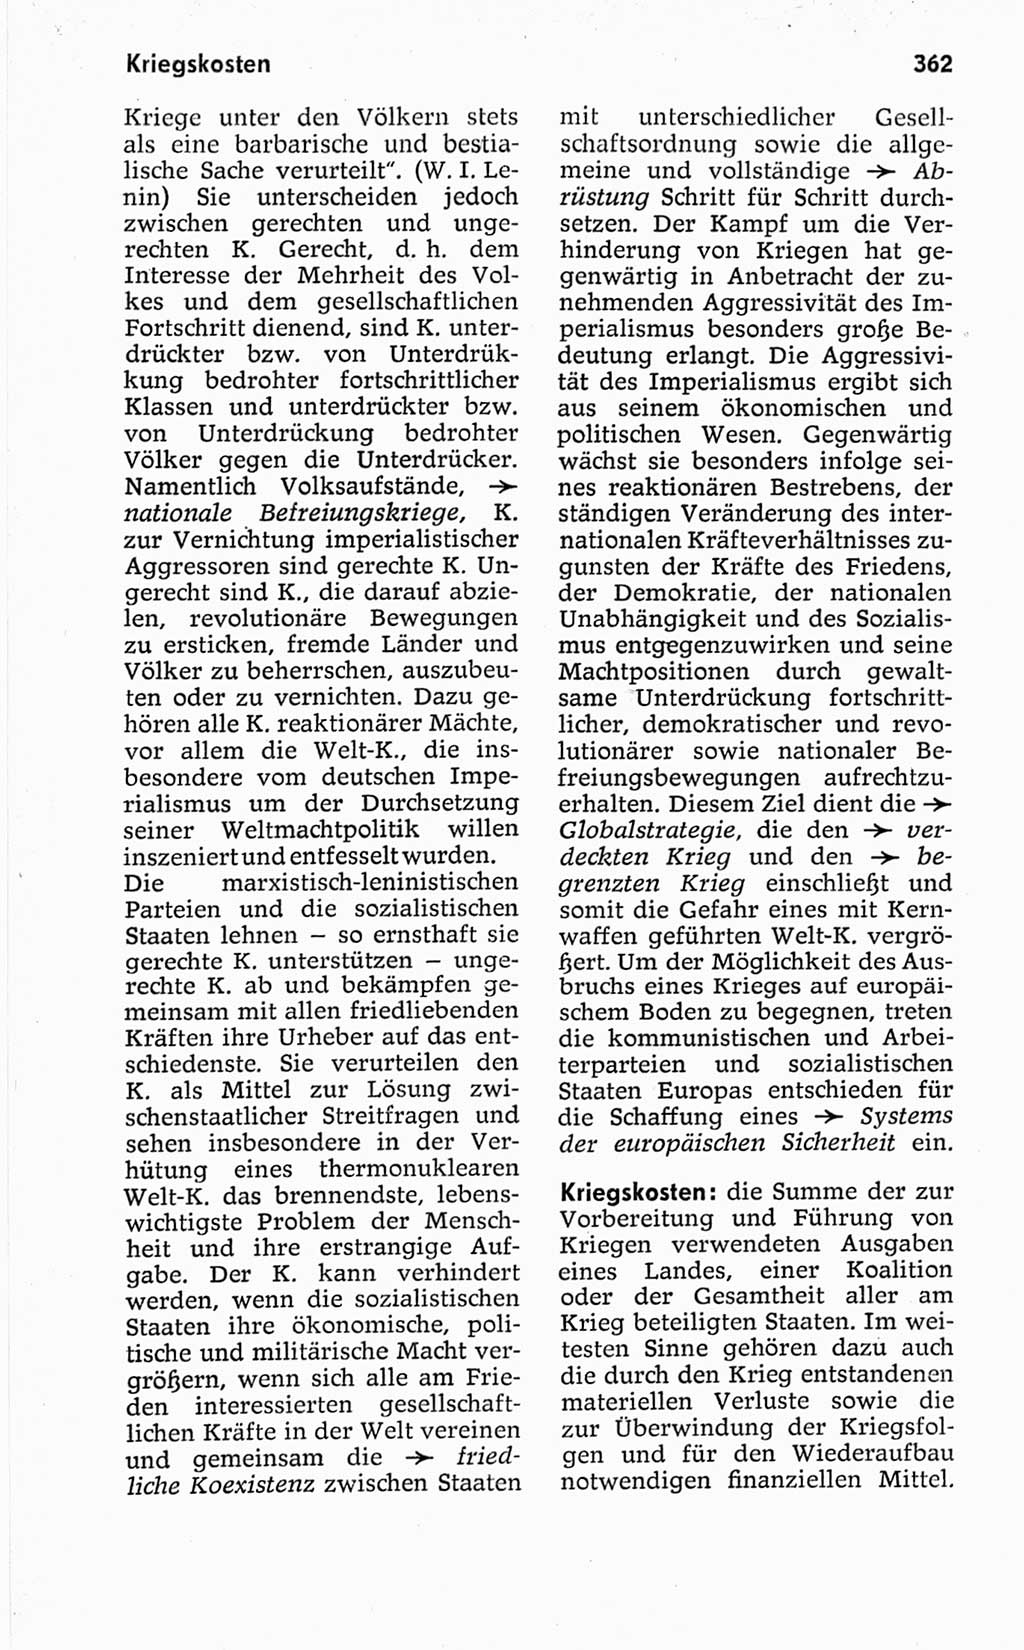 Kleines politisches Wörterbuch [Deutsche Demokratische Republik (DDR)] 1967, Seite 362 (Kl. pol. Wb. DDR 1967, S. 362)